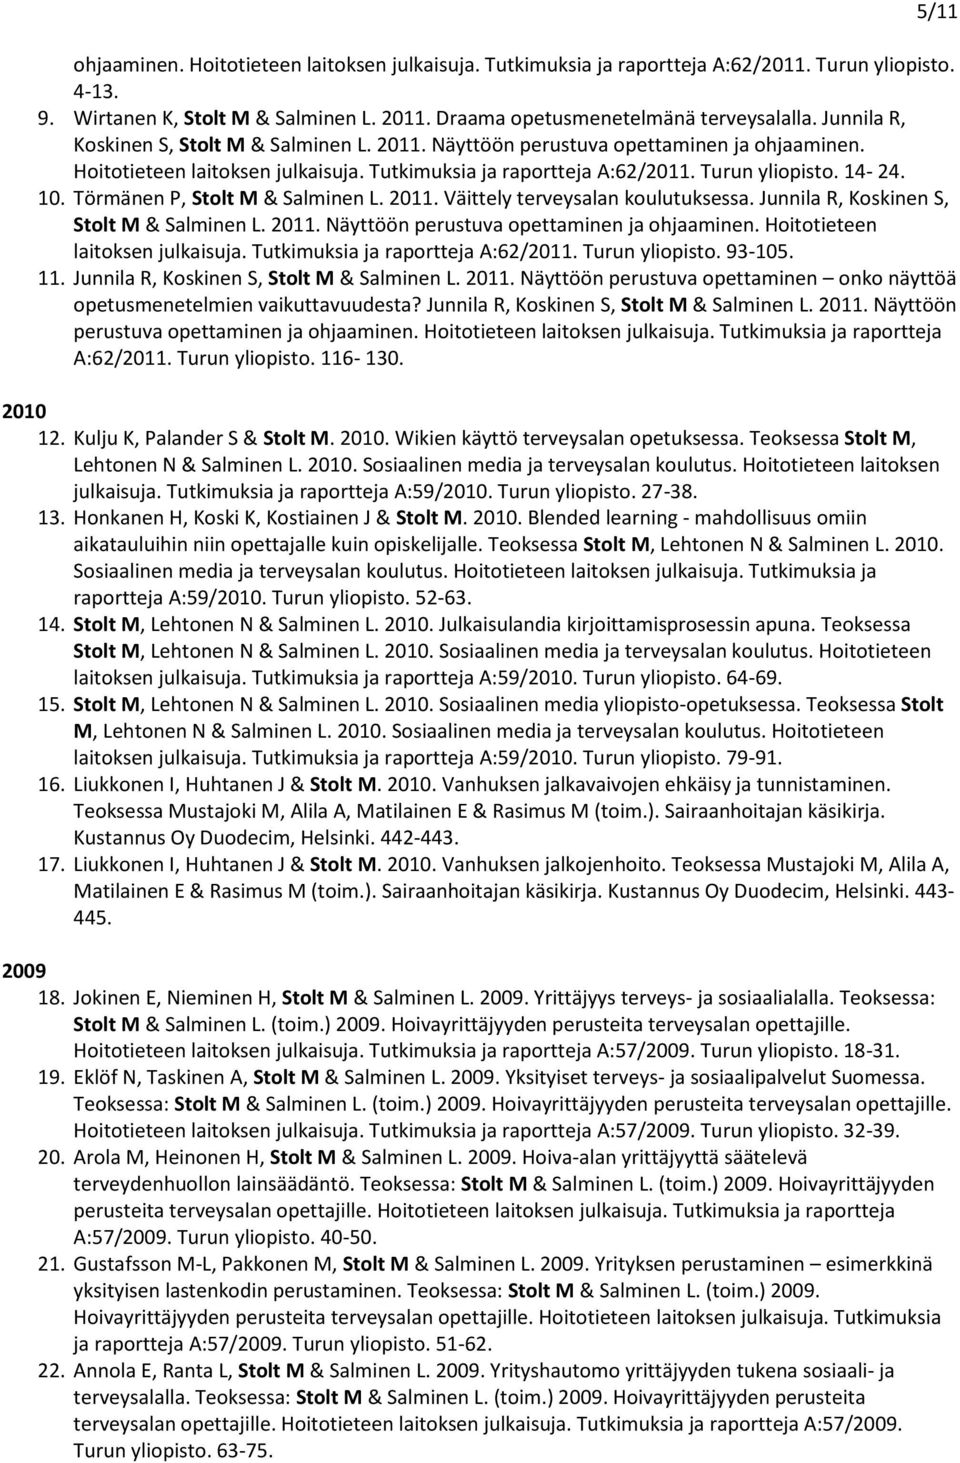 Törmänen P, Stolt M & Salminen L. 2011. Väittely terveysalan koulutuksessa. Junnila R, Koskinen S, Stolt M & Salminen L. 2011. Näyttöön perustuva opettaminen ja ohjaaminen.